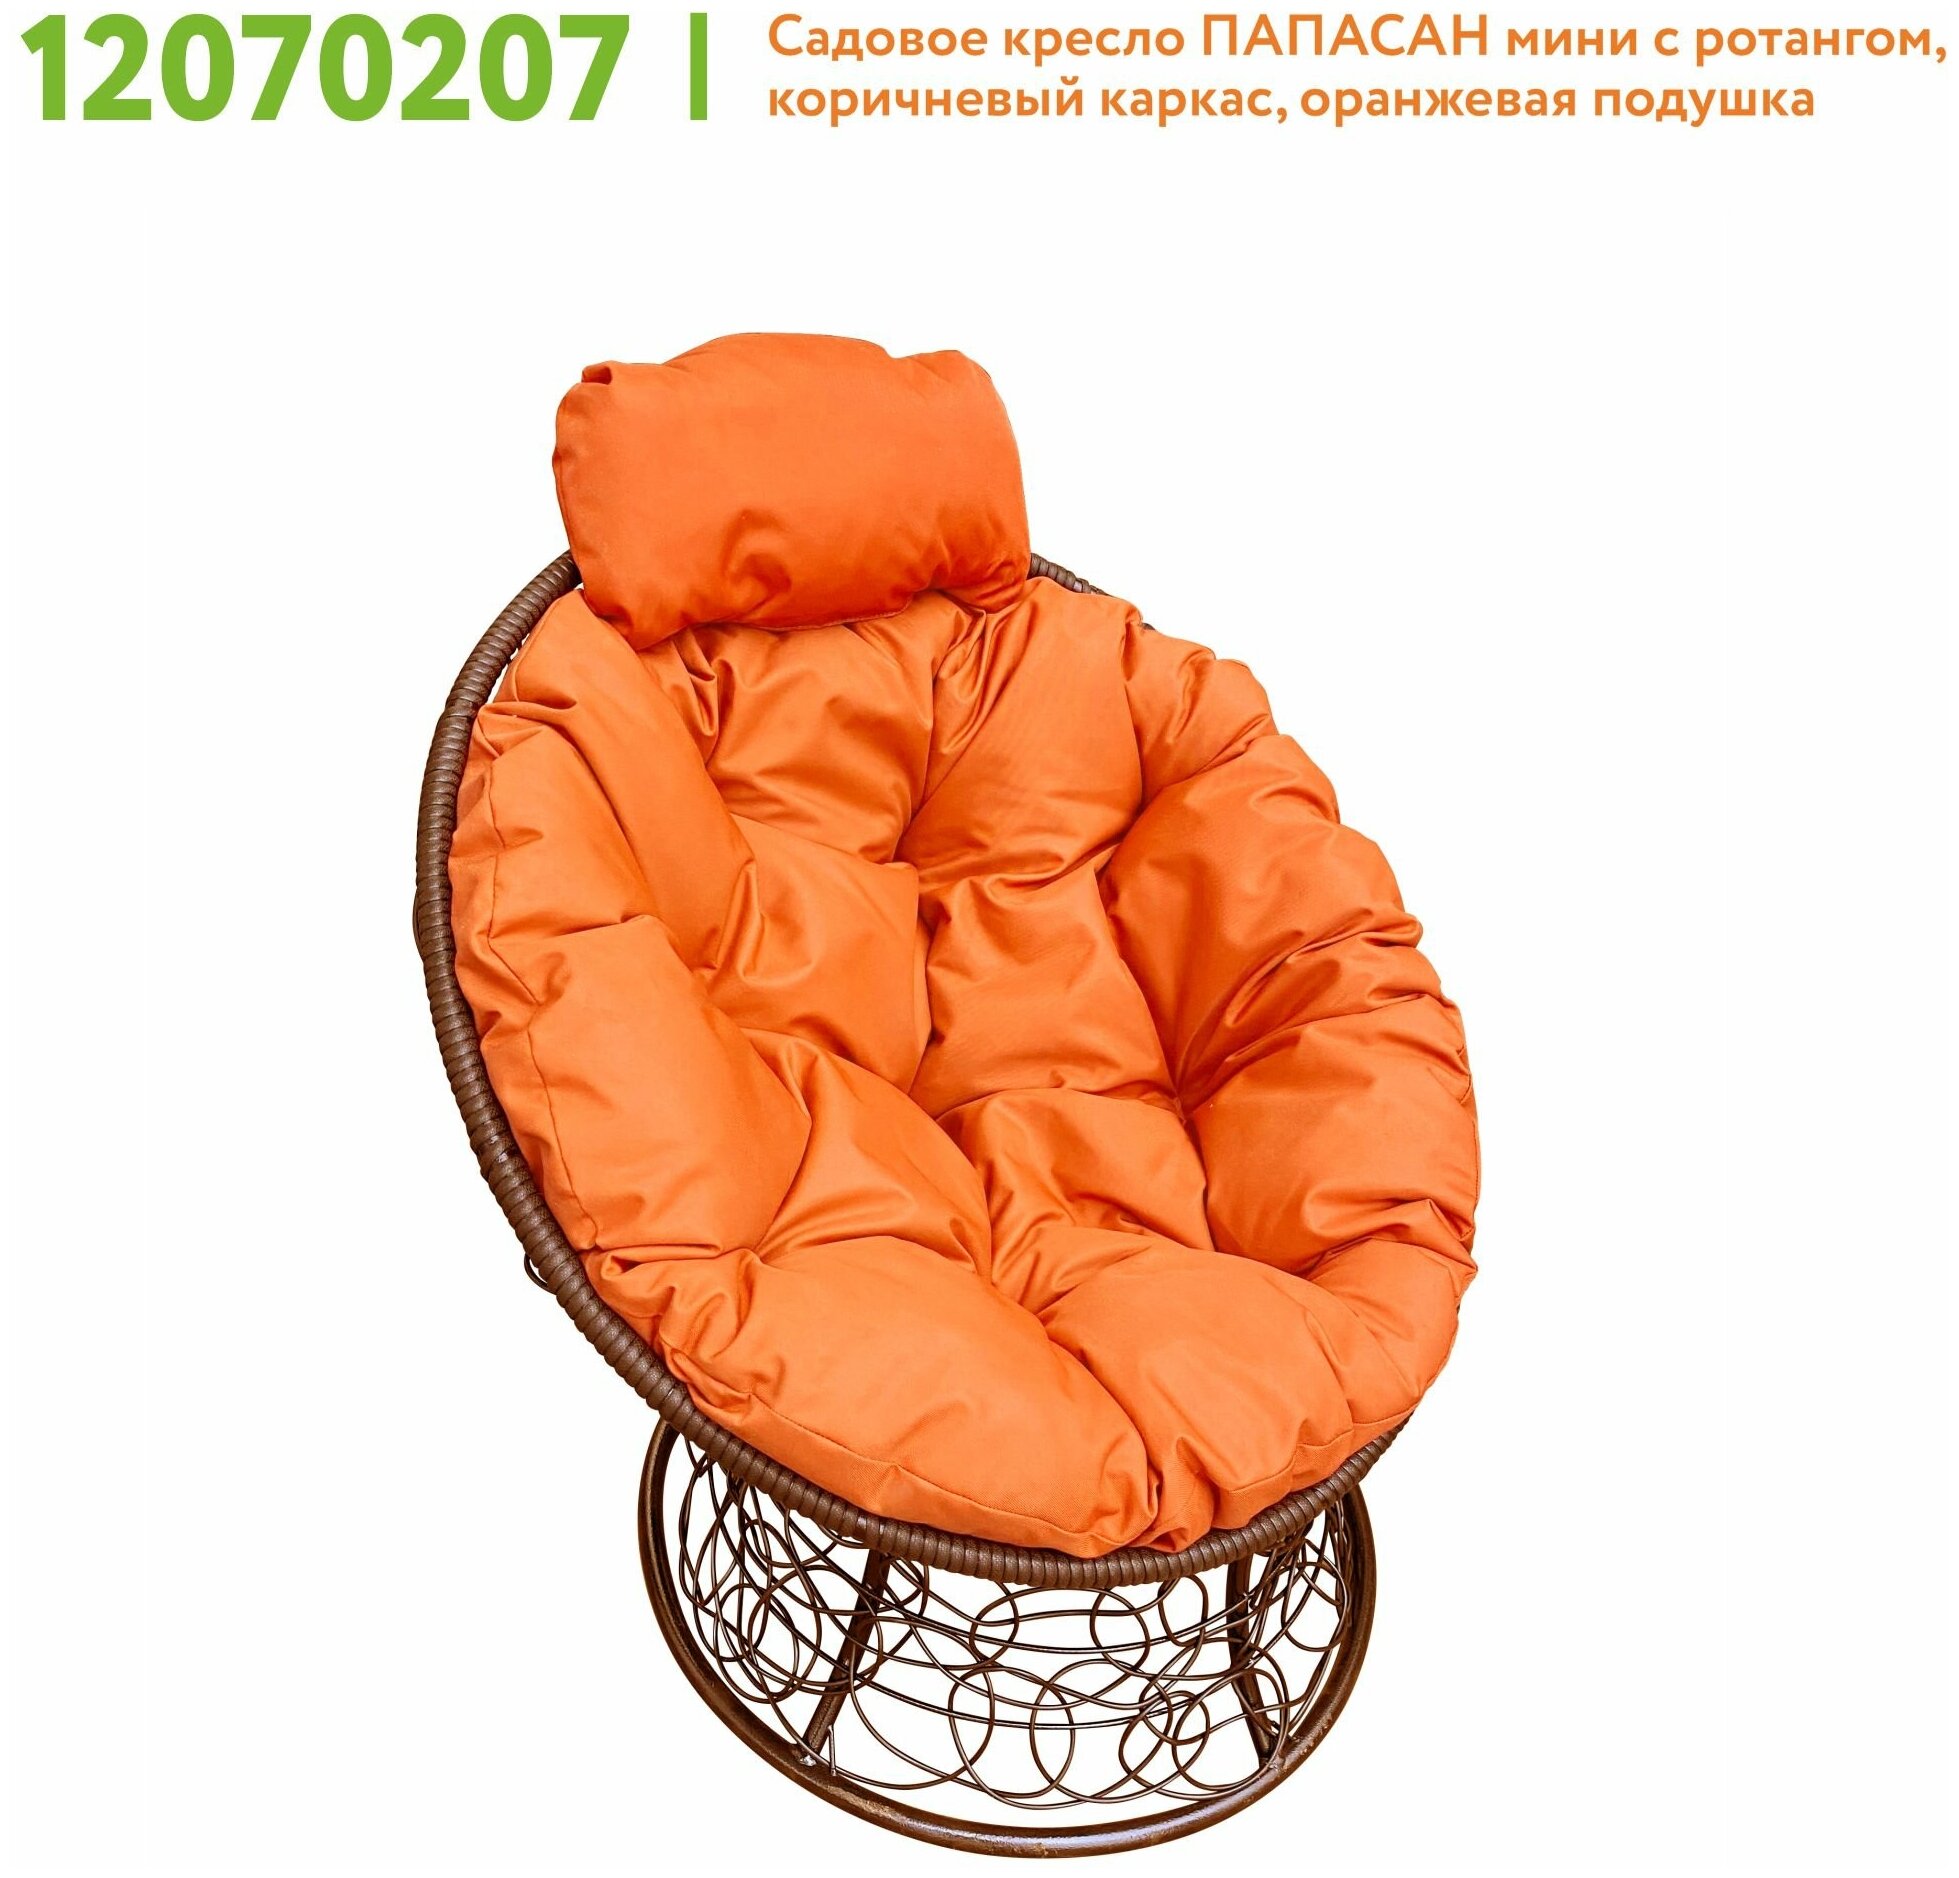 Кресло M-Group папасан мини ротанг коричневое, оранжевая подушка - фотография № 2